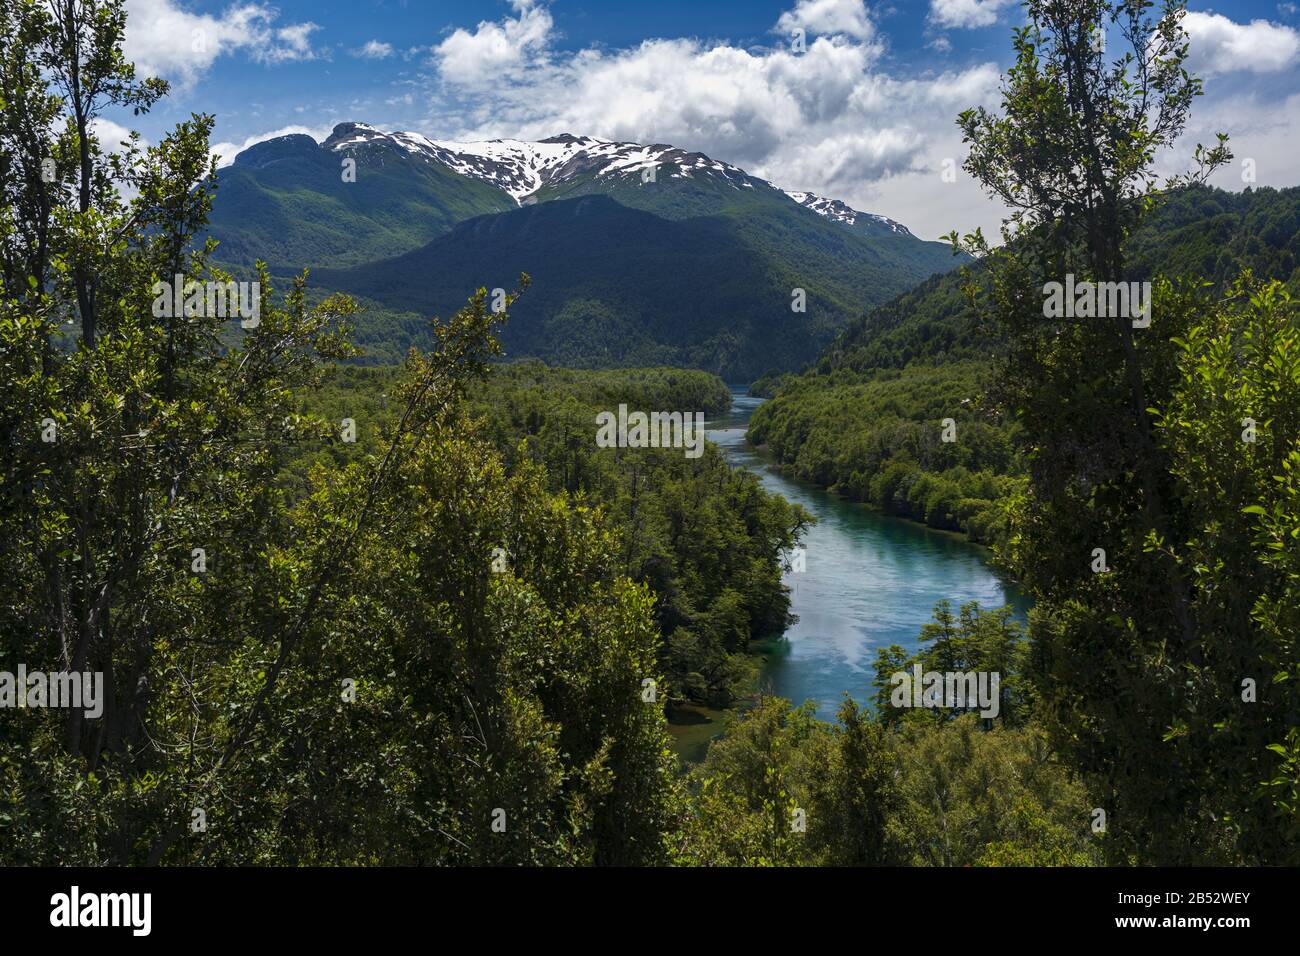 Der Fluss Los Arrayanes schlängelt sich zwischen bewaldeten Hügeln am Fuß der Anden, Parque Nacional los Alerces, Patagonien Argentina Stockfoto